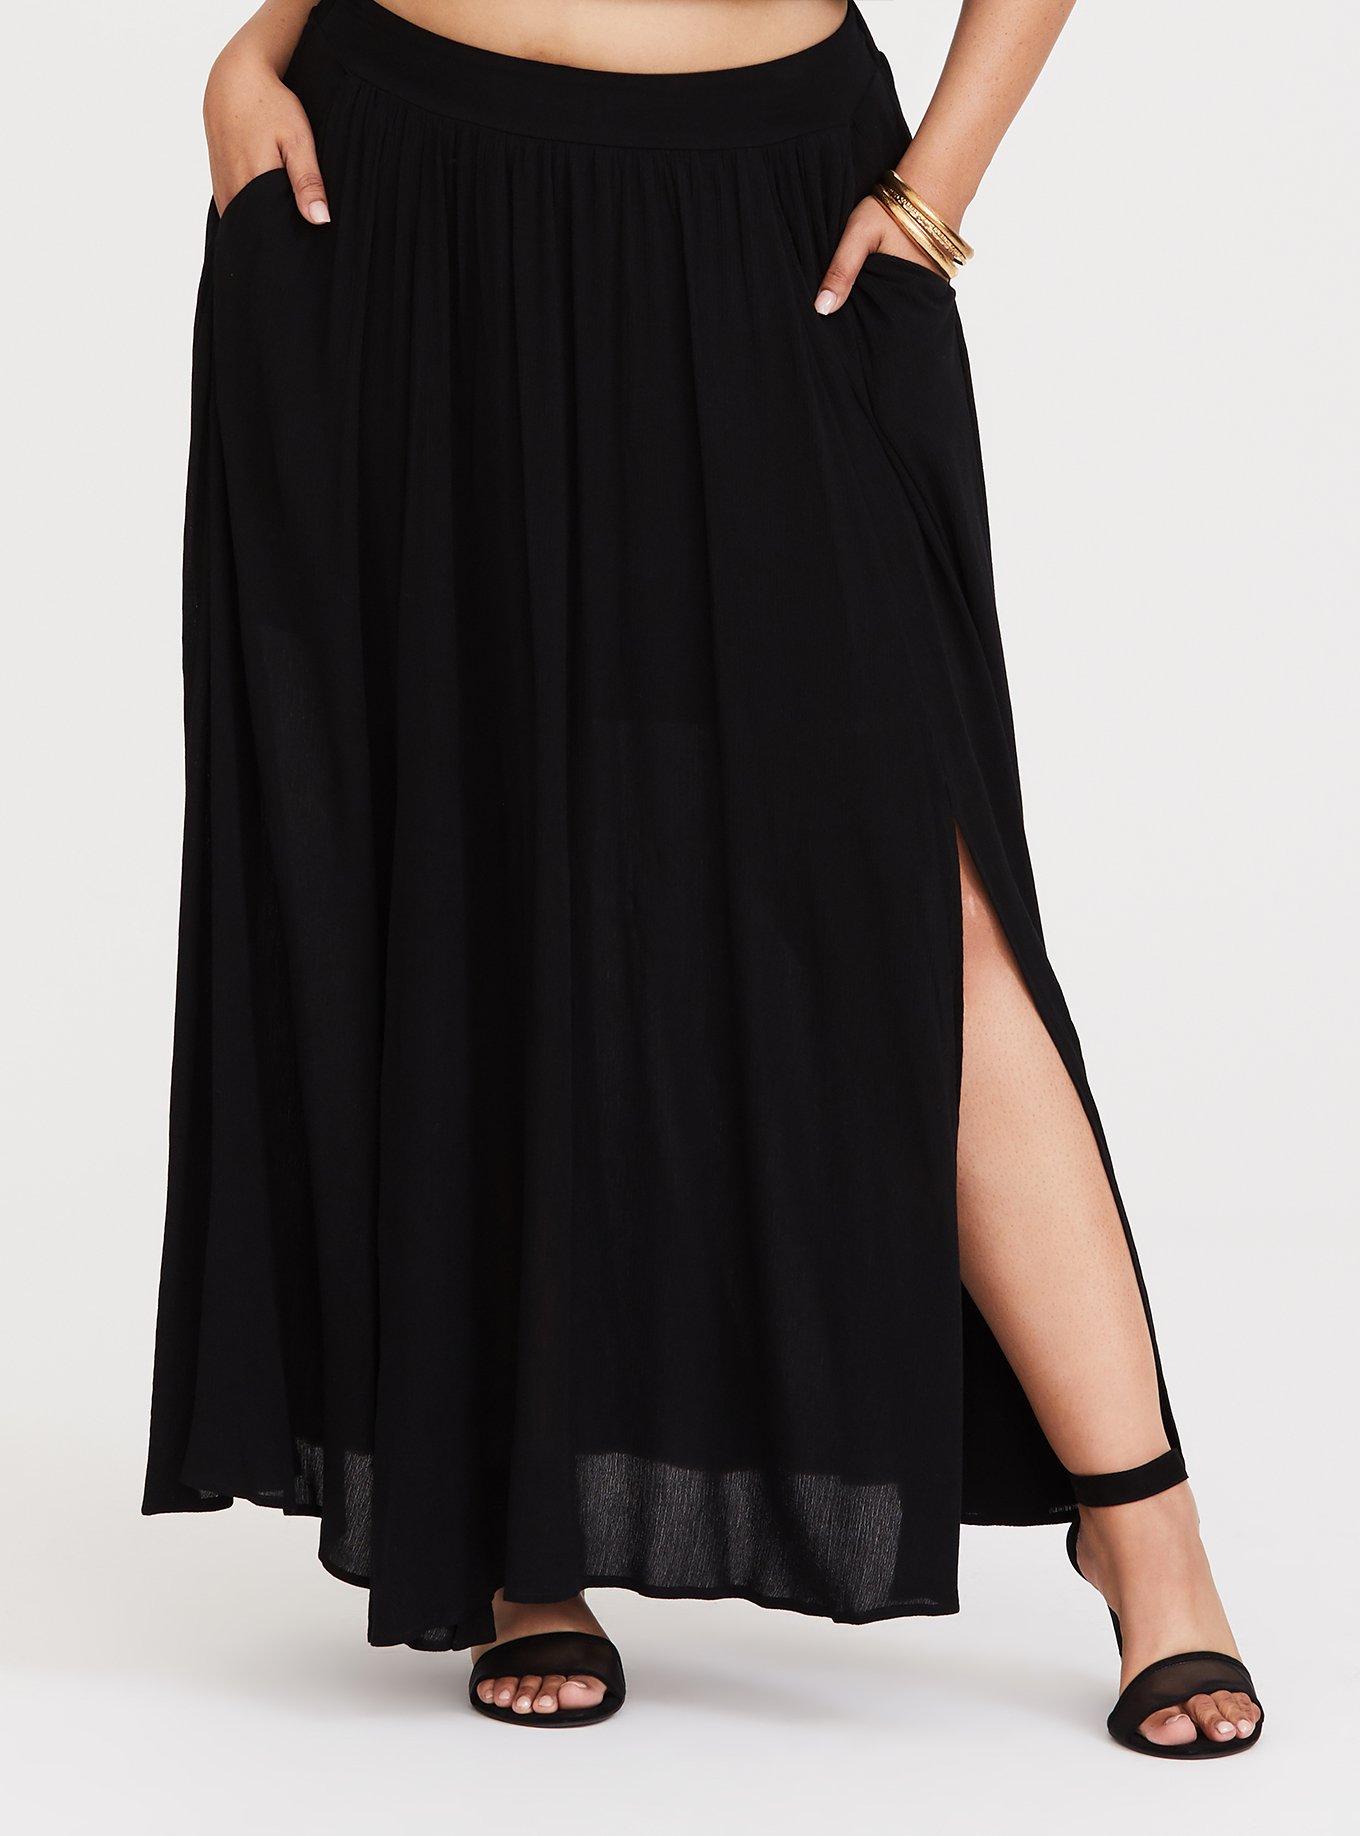 Torrid 2 Piece maxi skirt set  Plus size dresses, Plus size